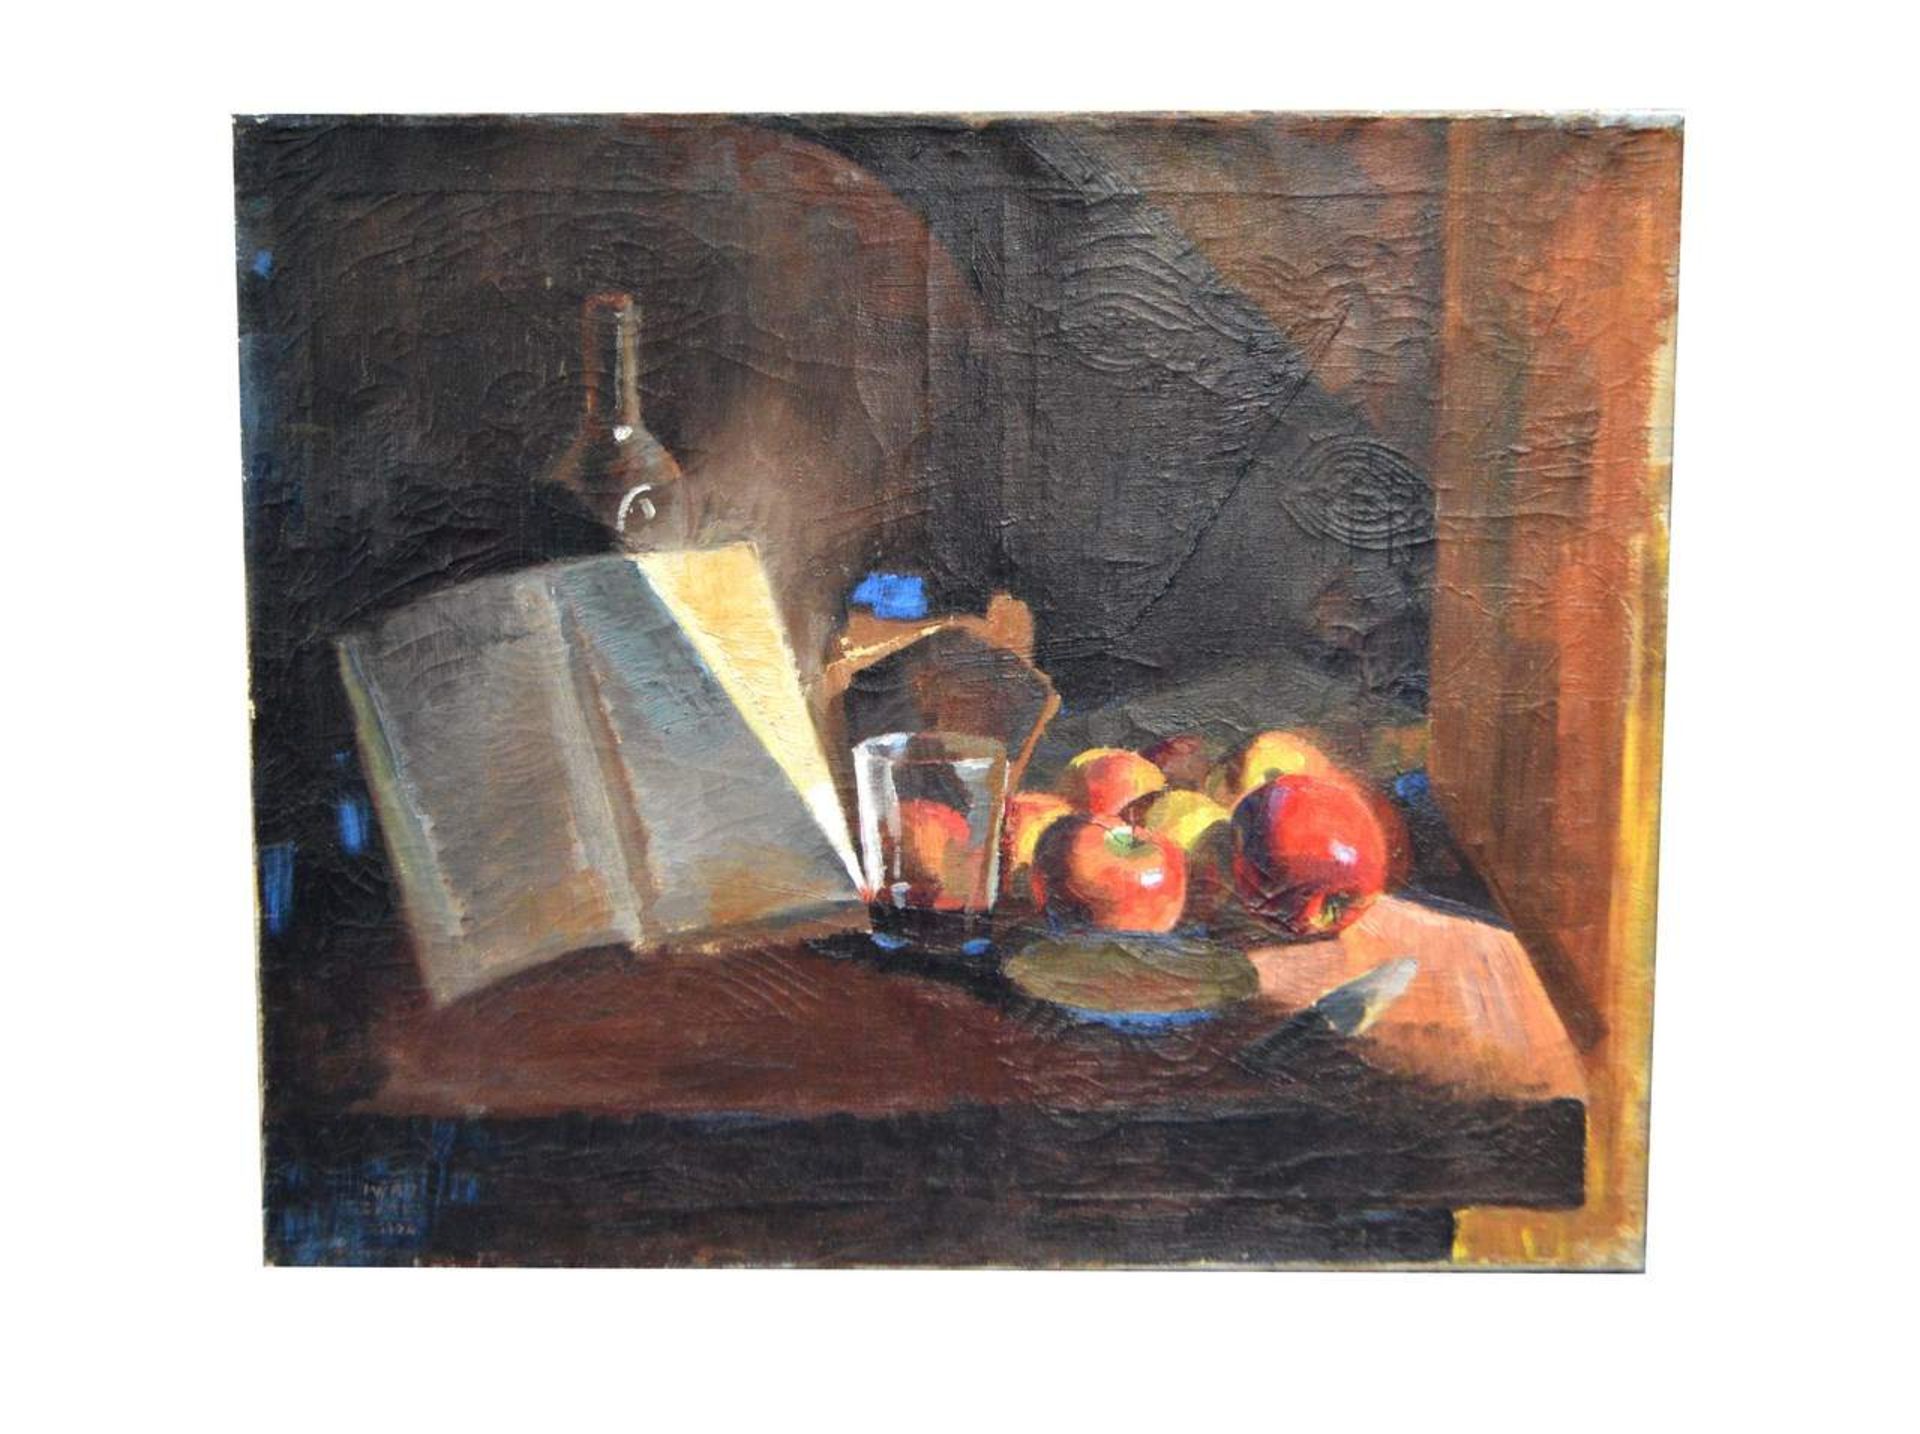 Iwan Cerf1894 Lüttich, Stillleben mit Äpfeln, Wasserglas und Buch, u.l.sign. Iwan Cerf und dat.